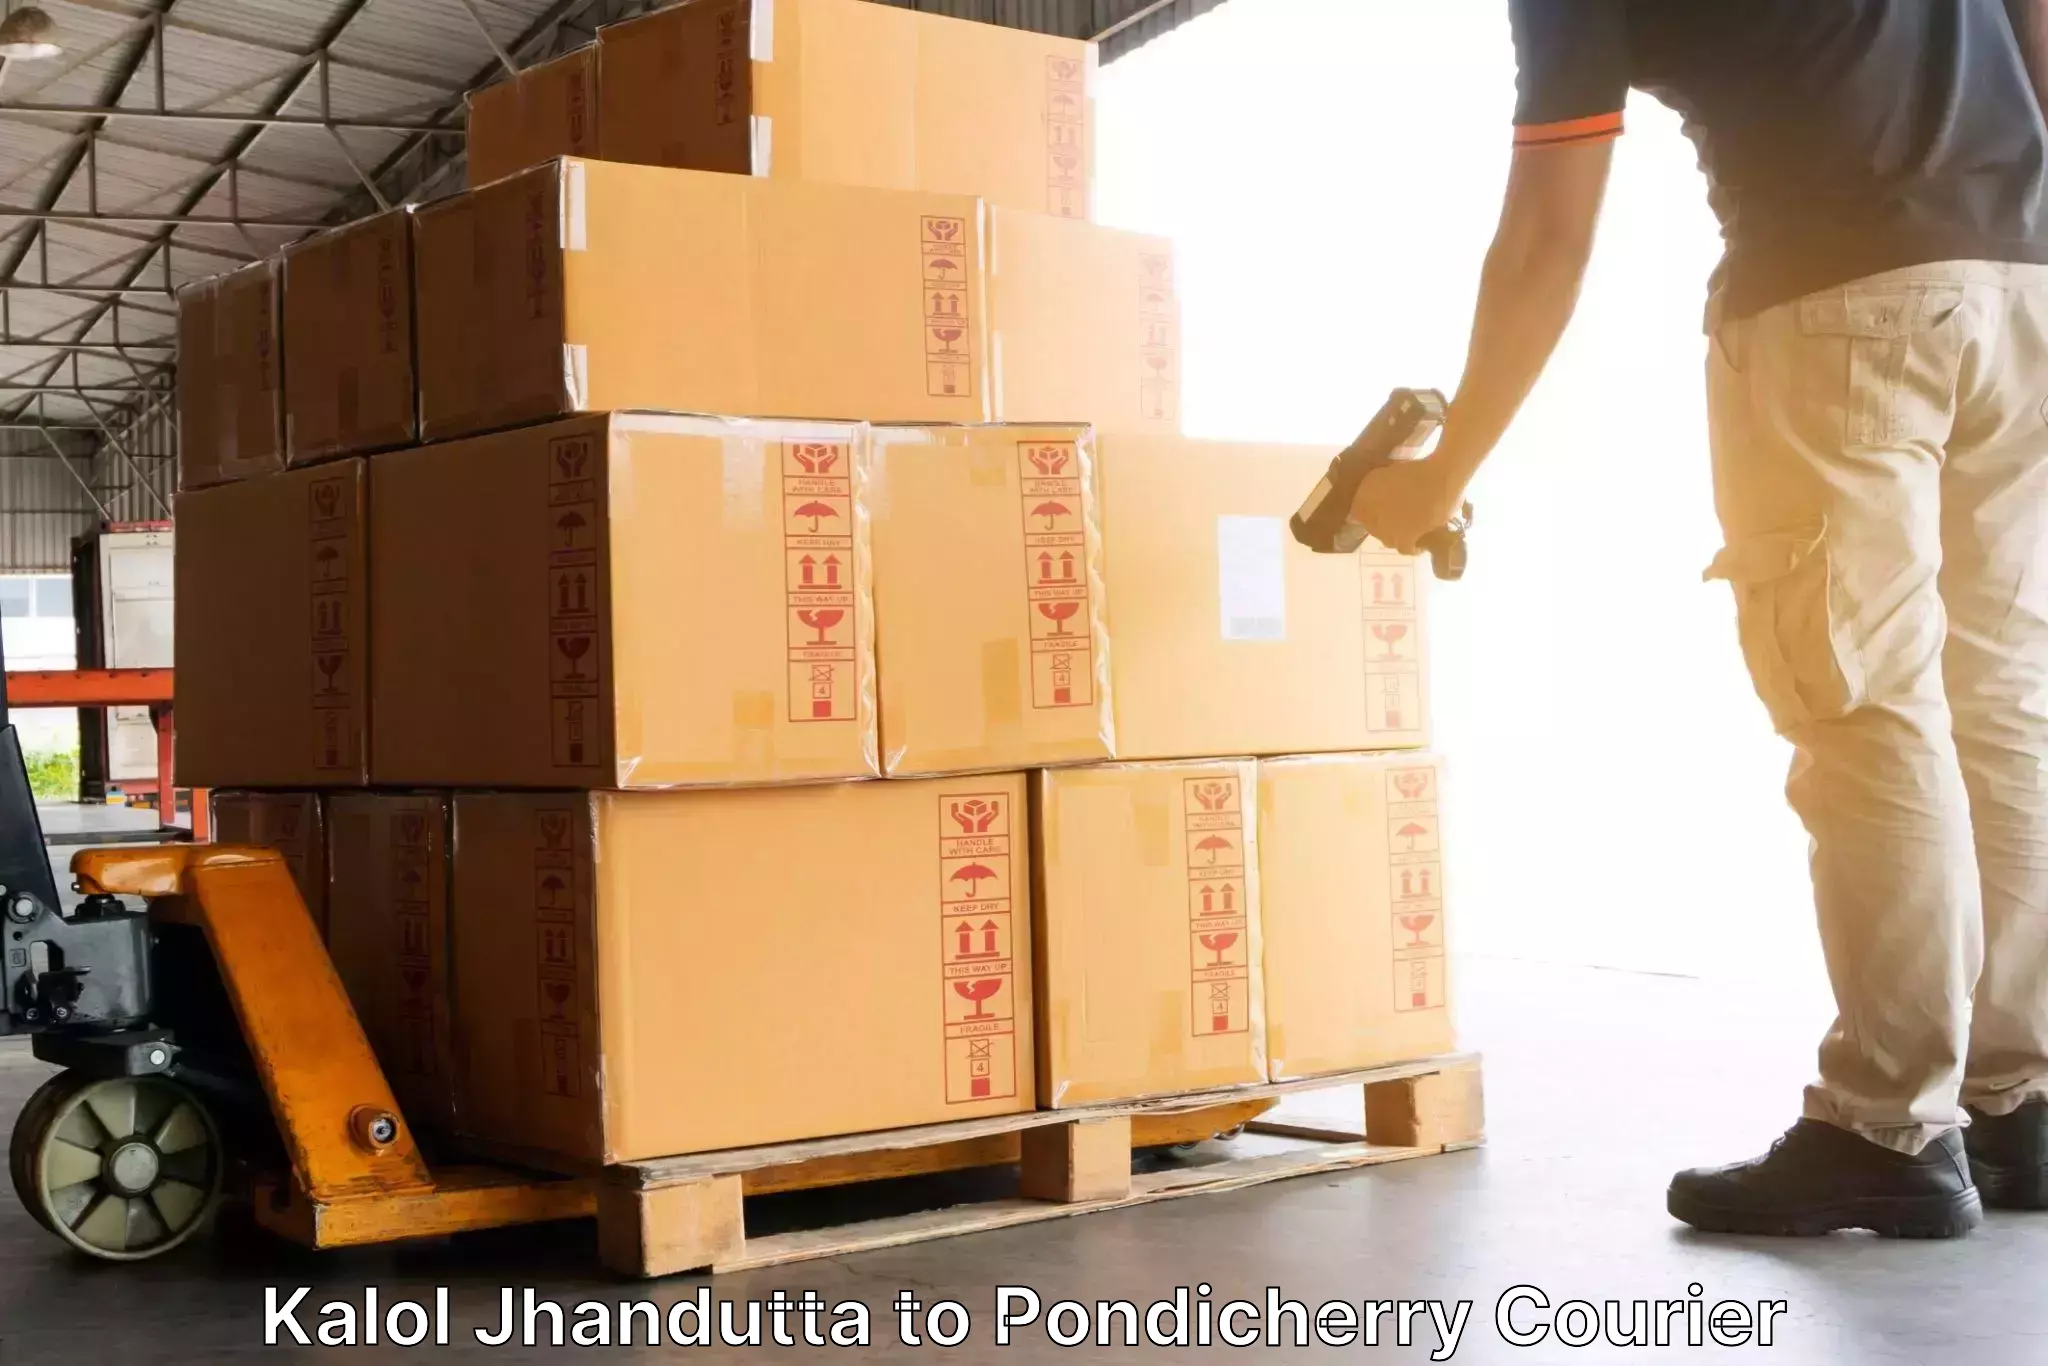 Multi-national courier services in Kalol Jhandutta to Pondicherry